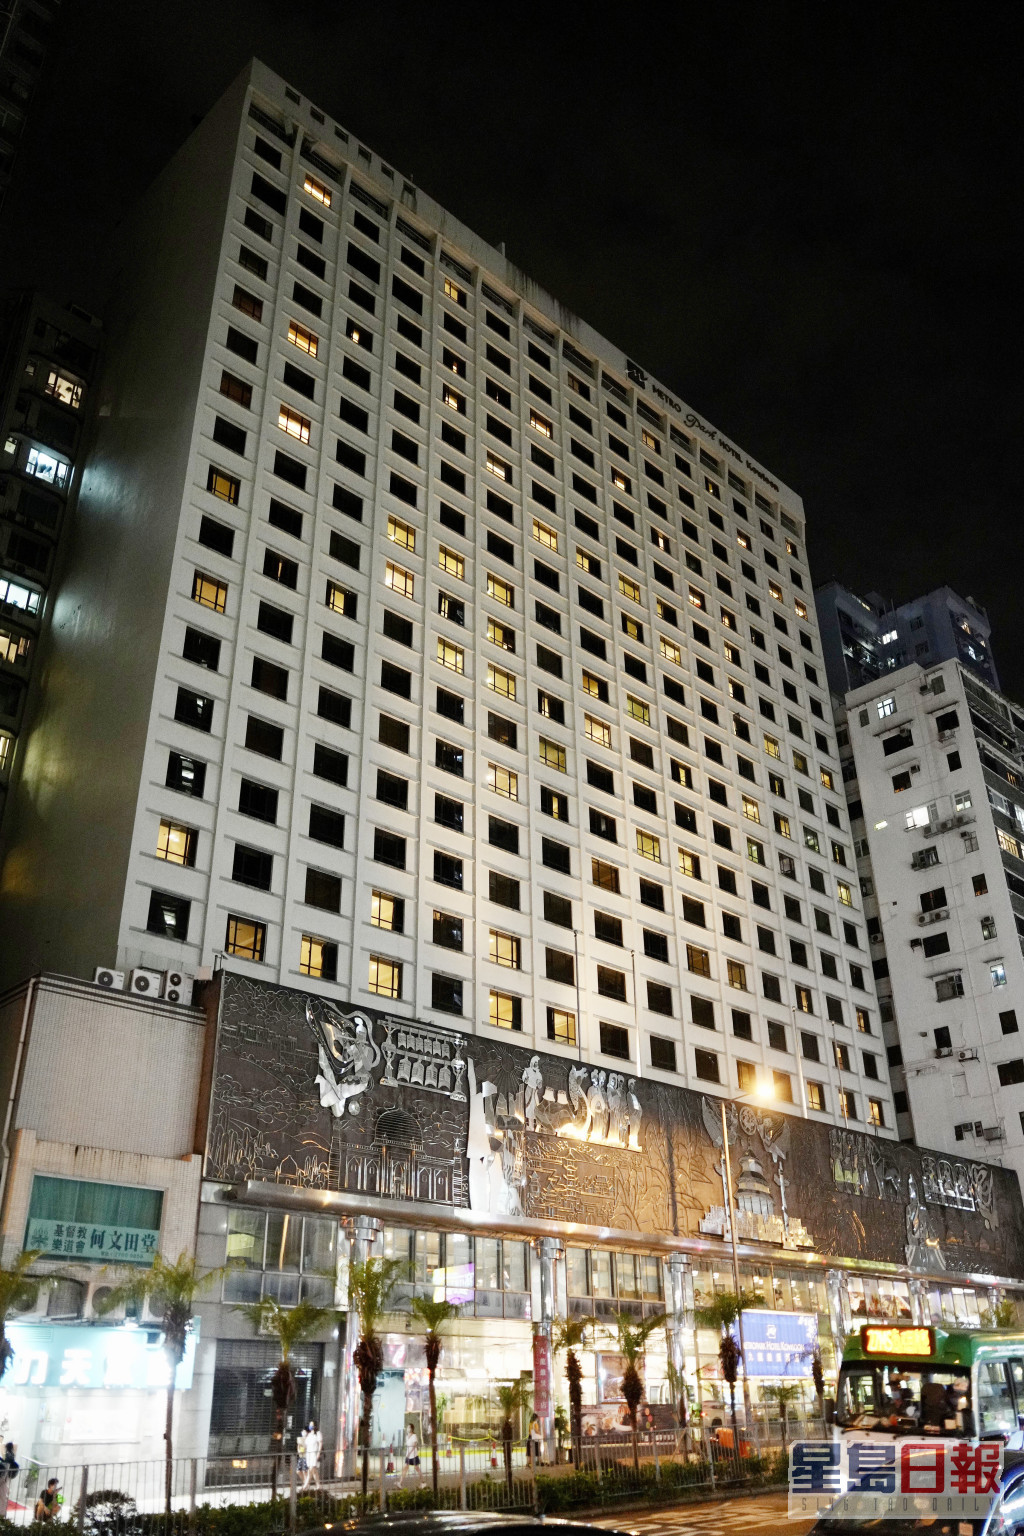 检疫酒店九龙维景酒店。资料图片